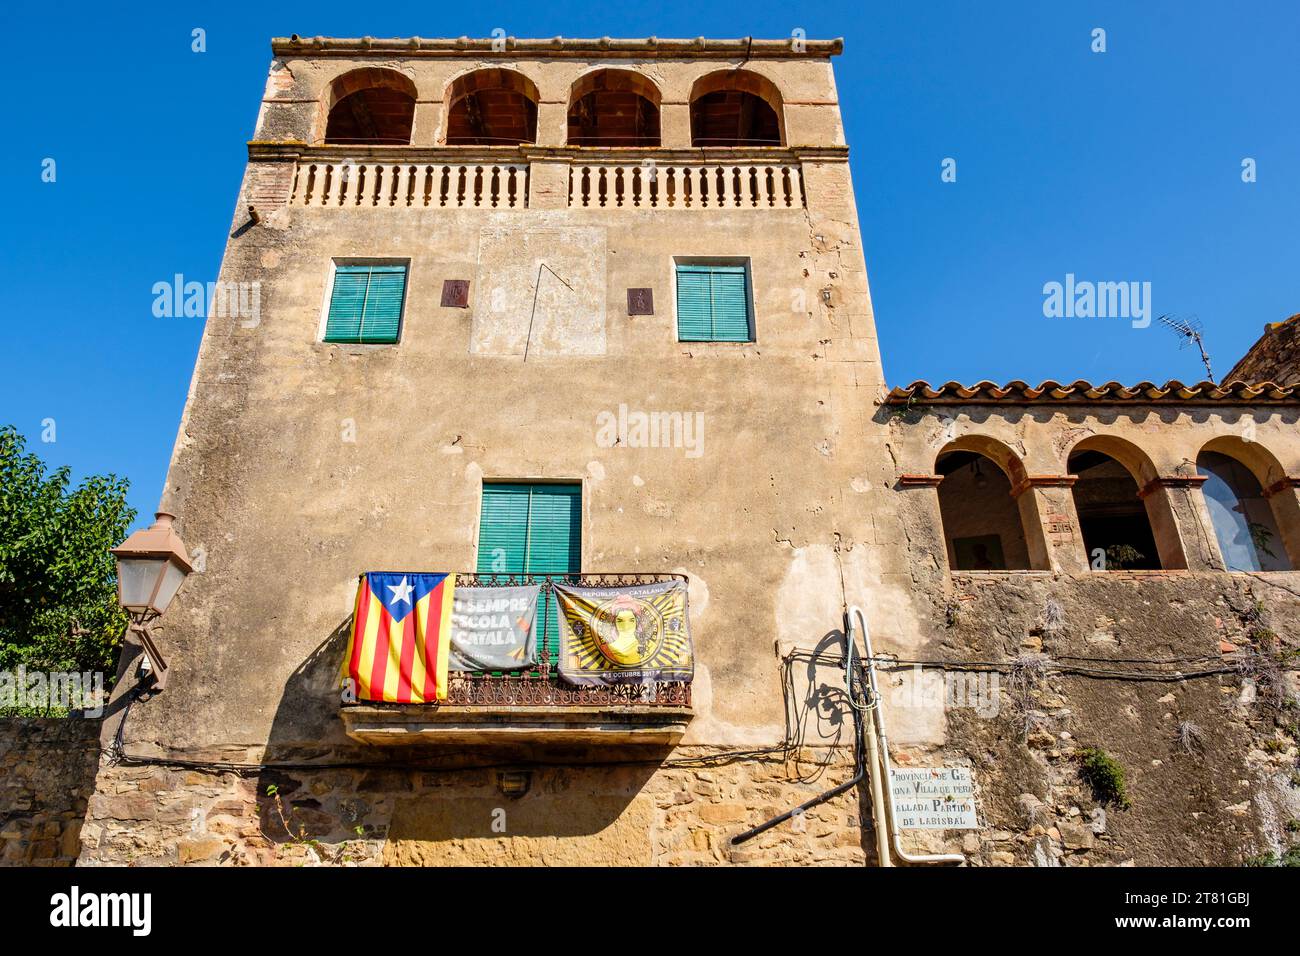 Katalanische estelada inoffizielle Sternenflagge und Banner, die katalanische Unabhängigkeit fördern, hängen von einem Balkon im Dorf Pals, Katalonien, Spanien Stockfoto